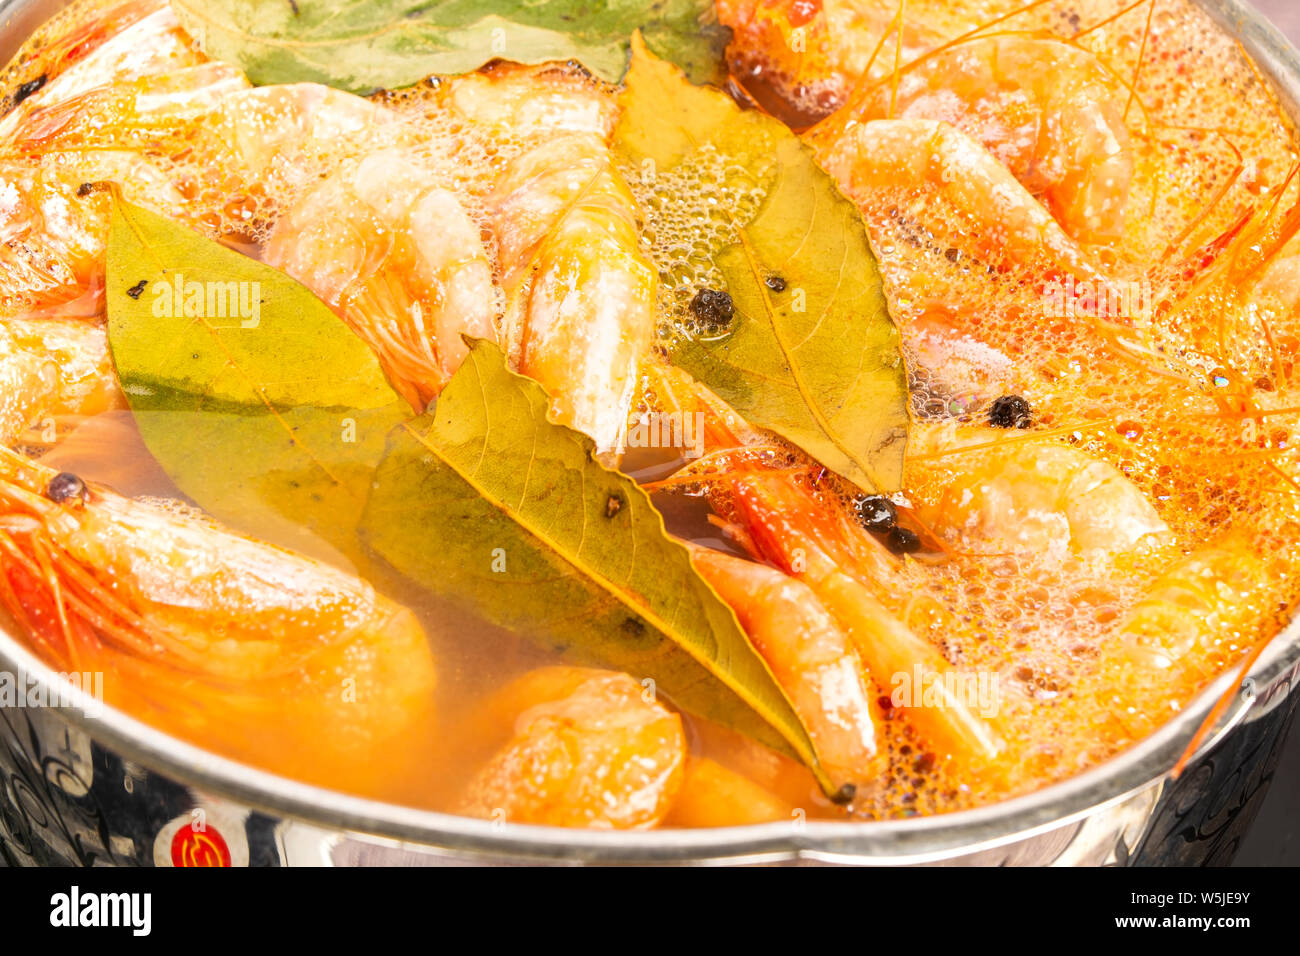 Atlantic i gamberetti sono cotti con la foglia di alloro e il pepe della Giamaica in un piatto di pesata in acciaio inox. Foto Stock